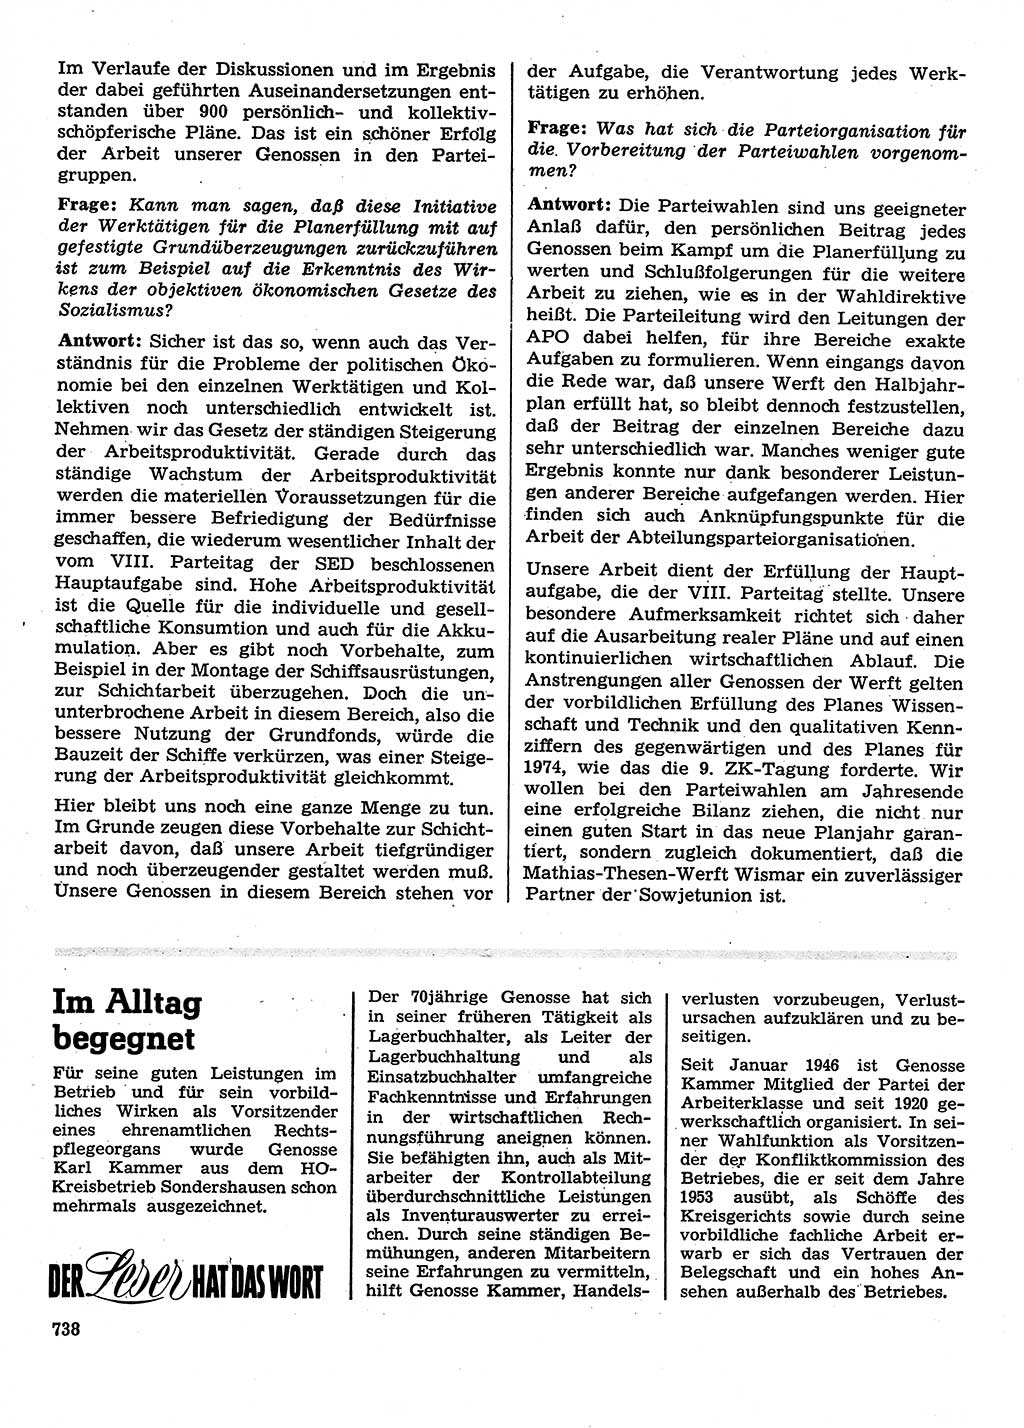 Neuer Weg (NW), Organ des Zentralkomitees (ZK) der SED (Sozialistische Einheitspartei Deutschlands) für Fragen des Parteilebens, 28. Jahrgang [Deutsche Demokratische Republik (DDR)] 1973, Seite 738 (NW ZK SED DDR 1973, S. 738)